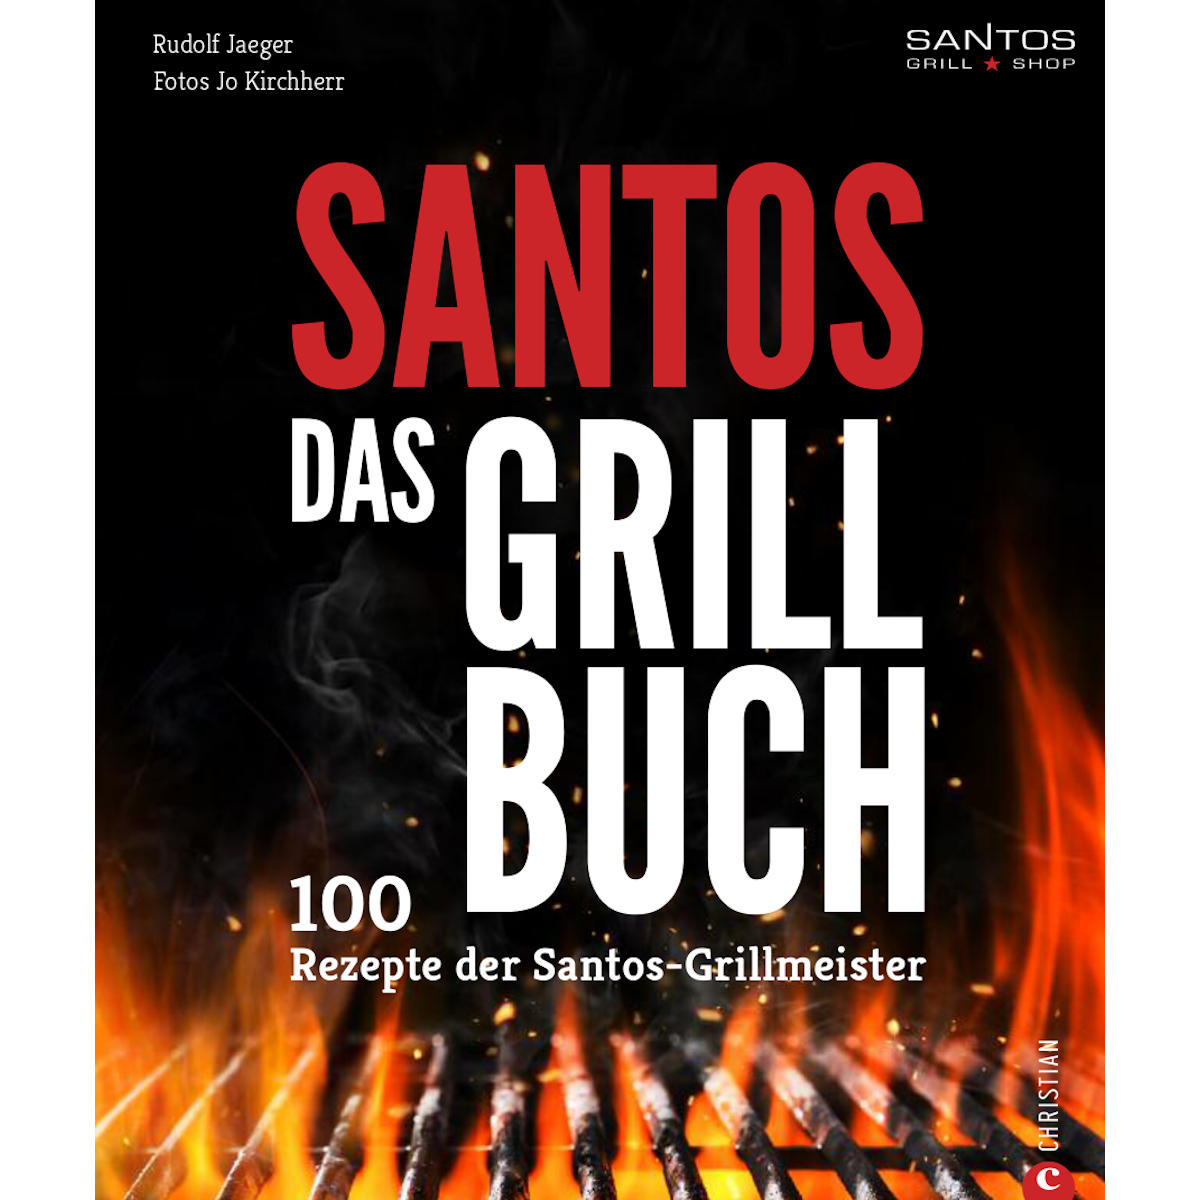 SANTOS Gusseisen für Grilltopf oder - - ideal Feuerstelle Lagerfeuer, ø31,5cm - - Kohle- Wokpfanne Feuertopf - Gas-Grill Guss-Wok rund oder